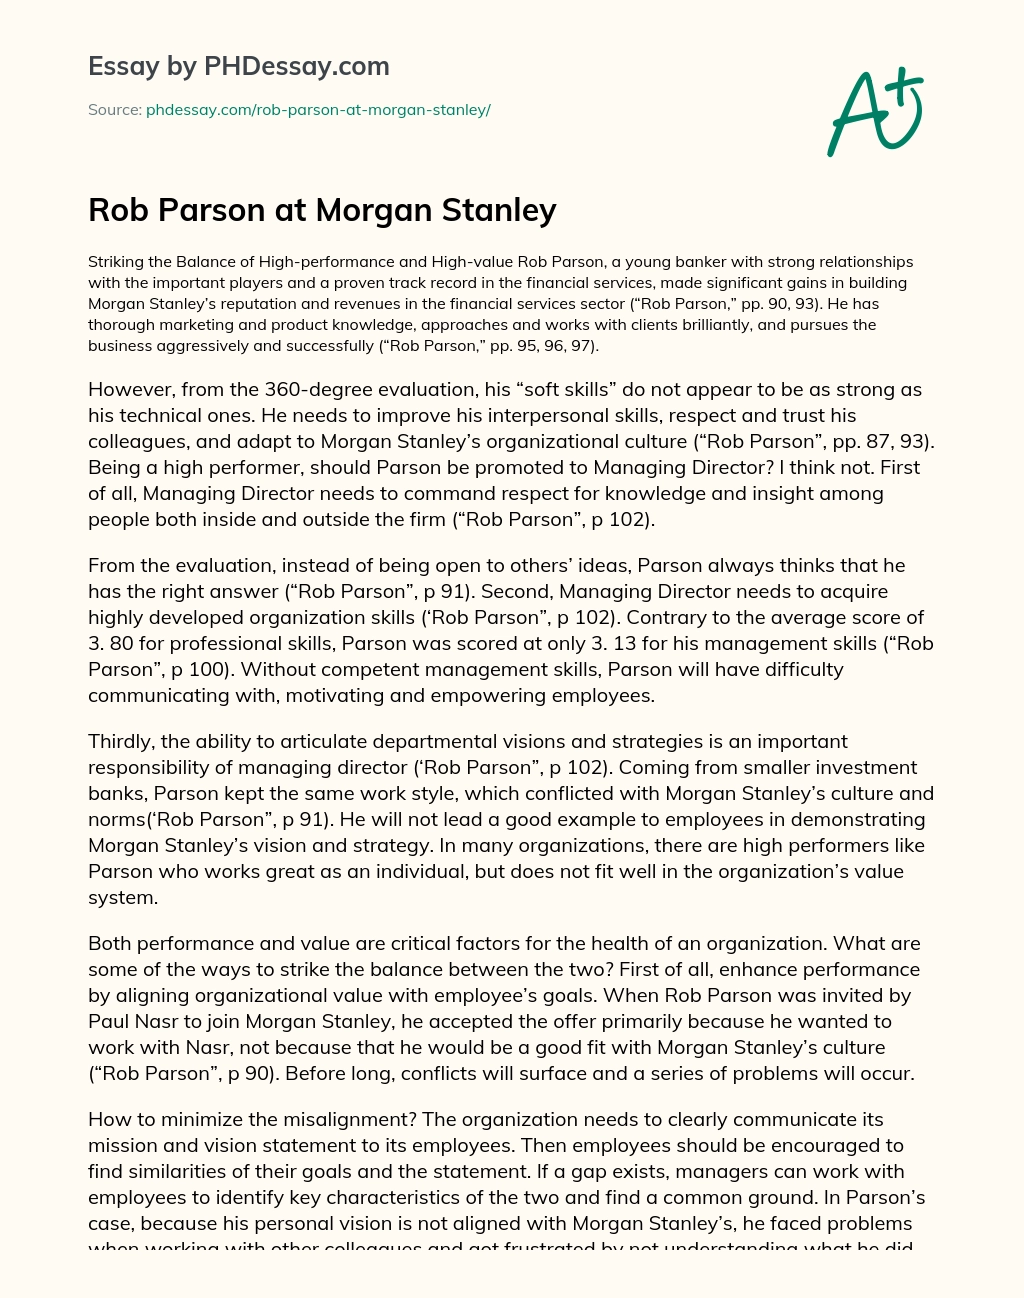 Rob Parson at Morgan Stanley essay